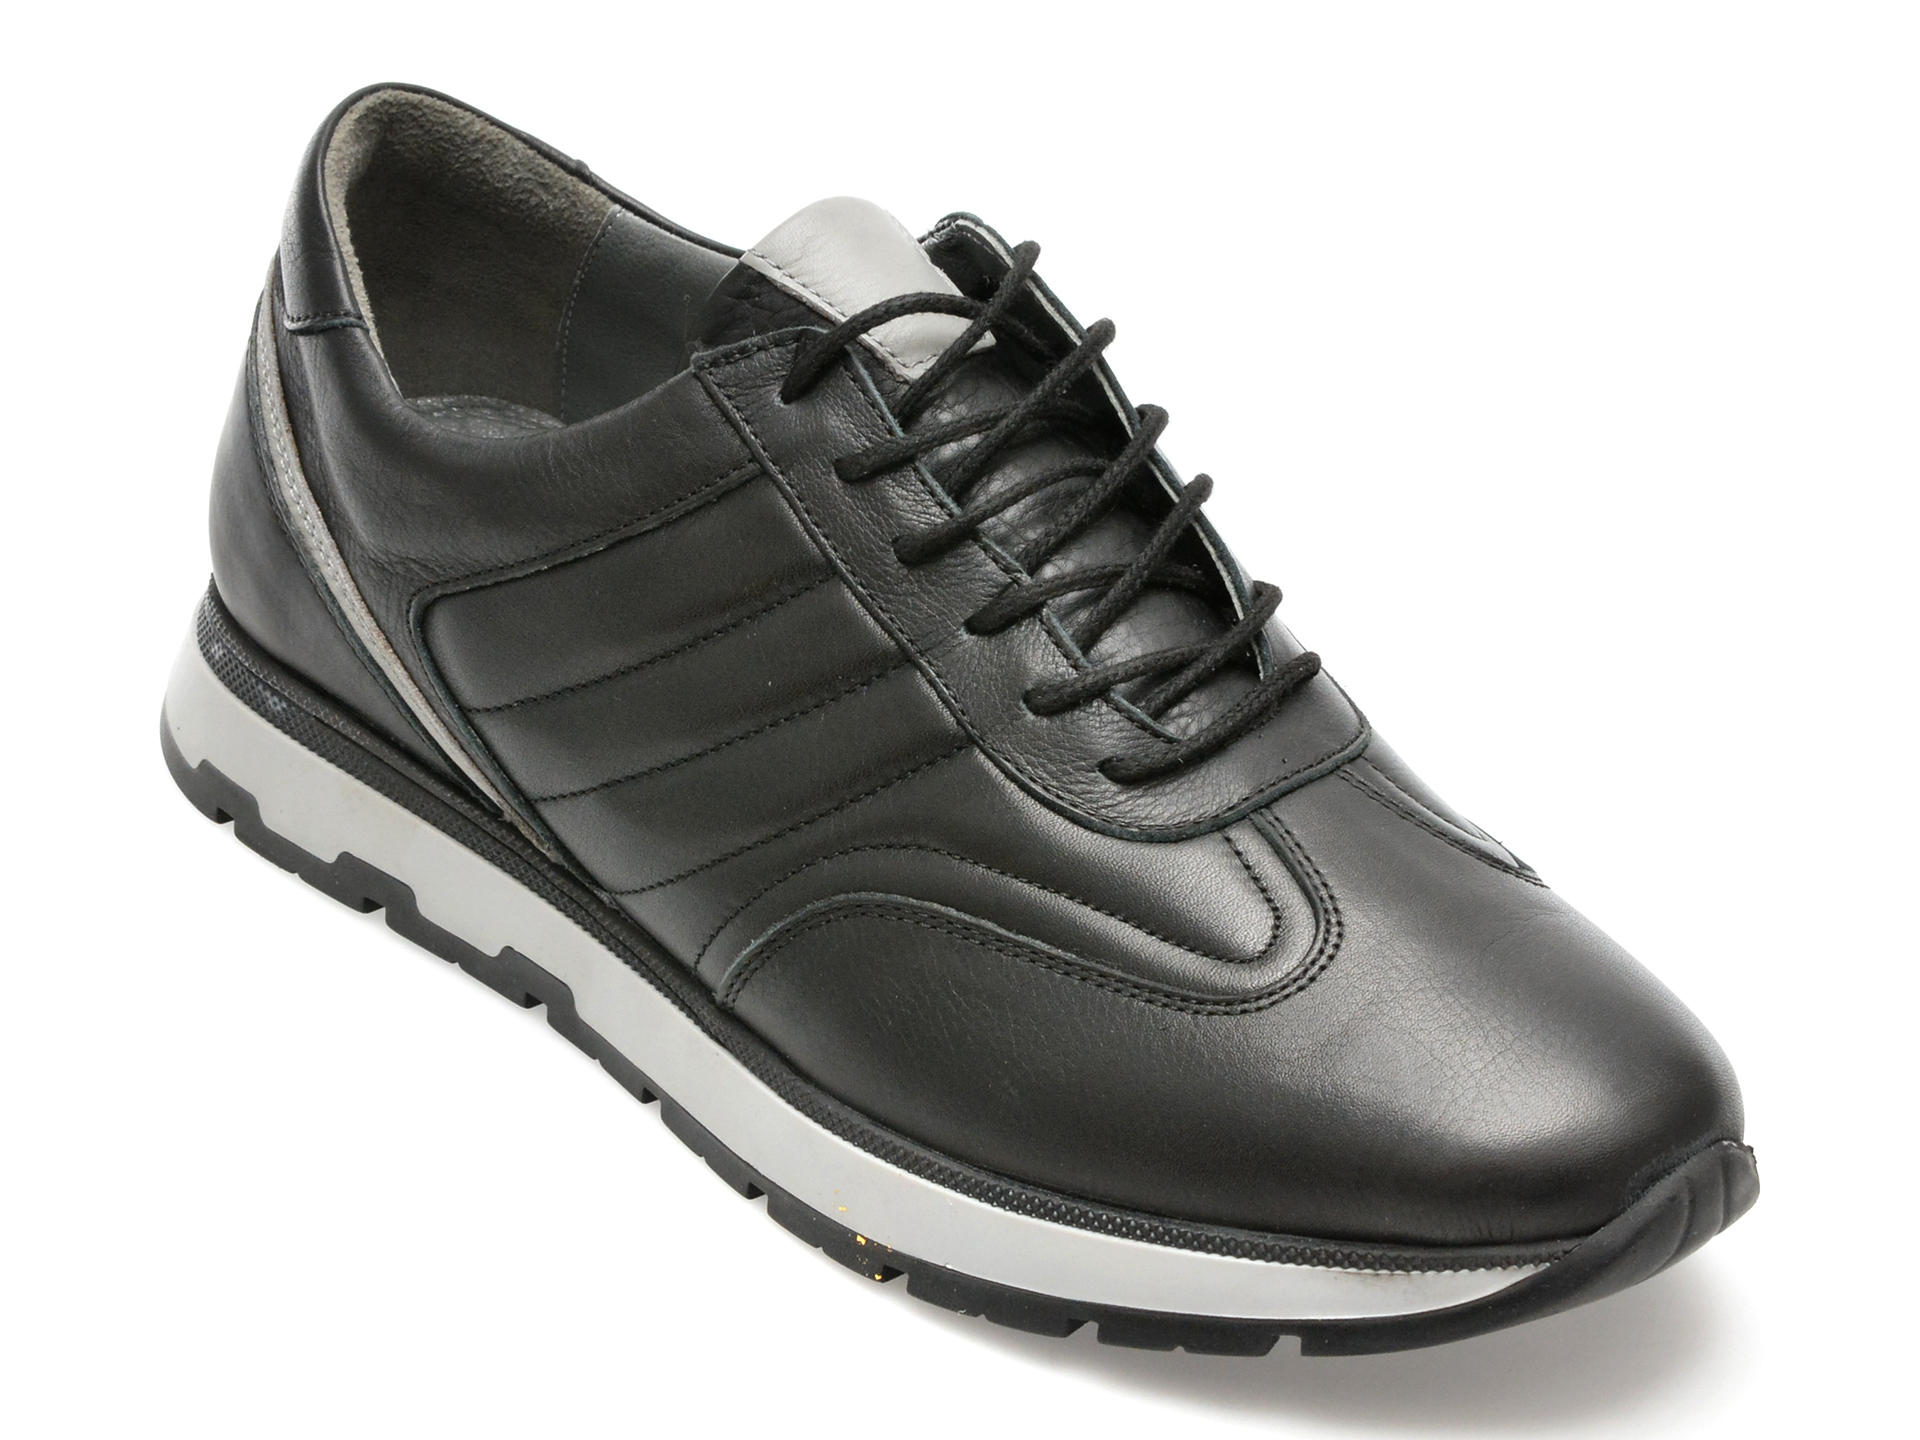 Pantofi AXXELLL negri, SY704, din piele naturala /barbati/pantofi